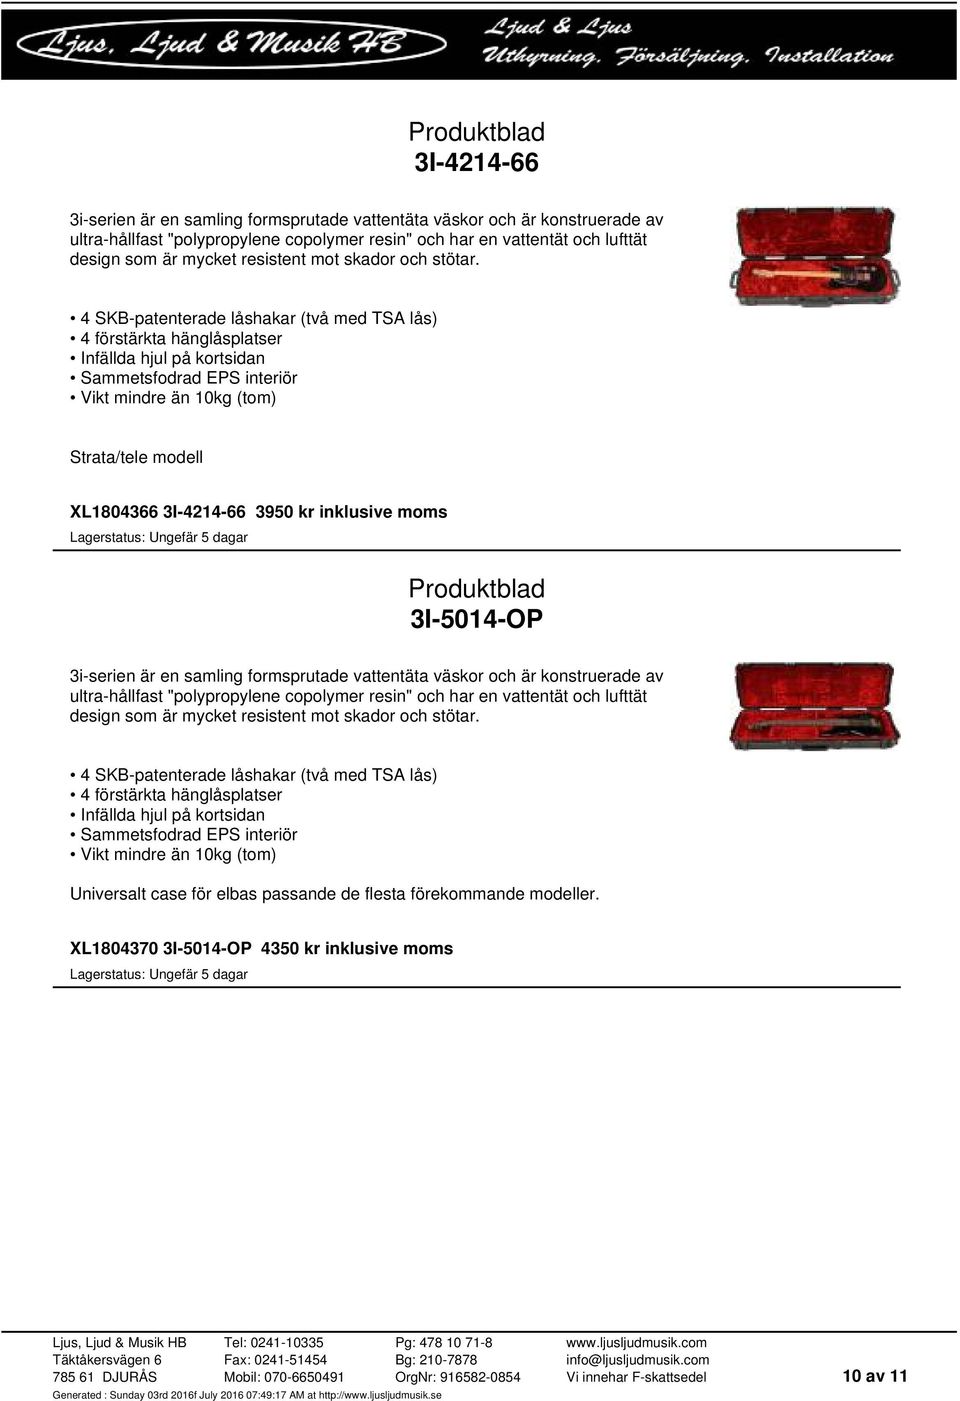 4 SKB-patenterade låshakar (två med TSA lås) 4 förstärkta hänglåsplatser Infällda hjul på kortsidan Sammetsfodrad EPS interiör Vikt mindre än 10kg (tom) Strata/tele modell XL1804366 3I-4214-66 3950